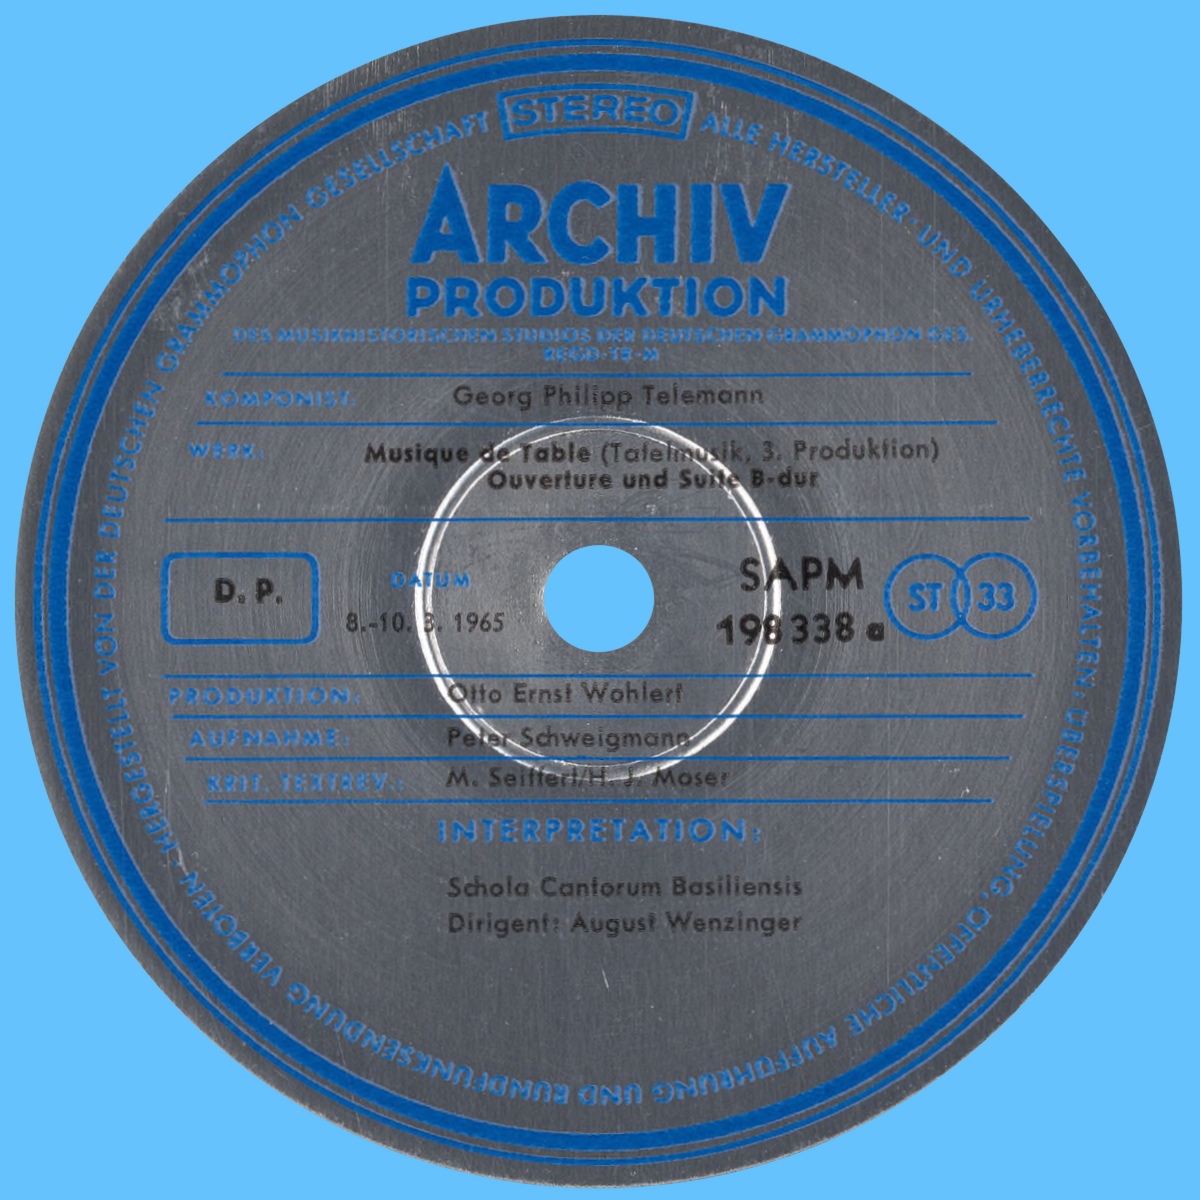 Étiquette recto du premier disque de l'album Archiv Produktion SAPM 198338/39